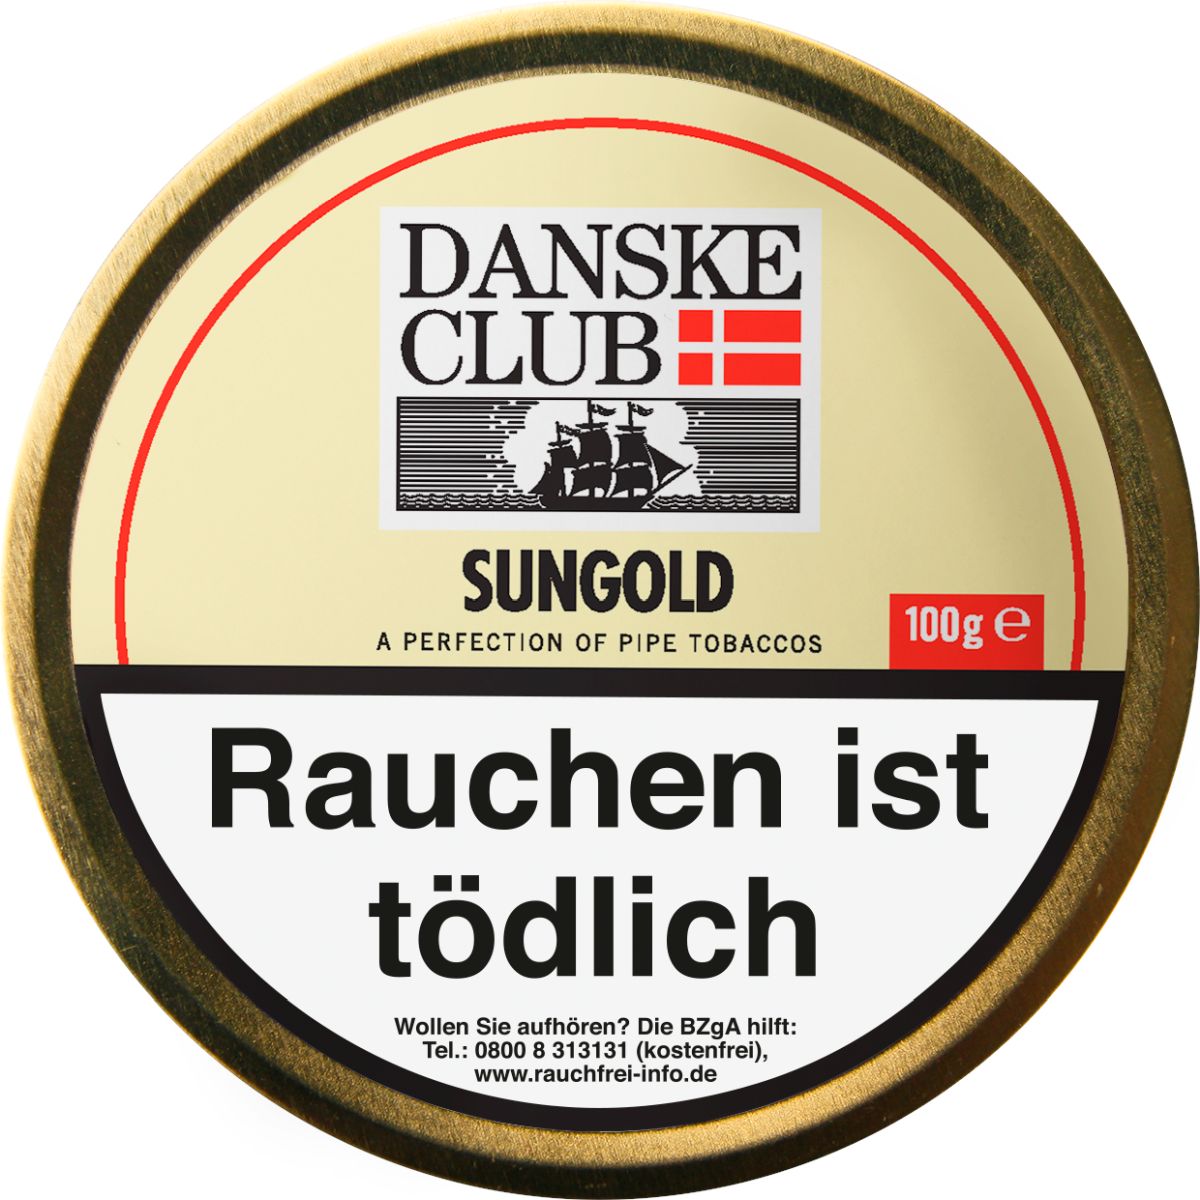 Danske Club Danske Club Sungold bei www.Tabakring.de kaufen